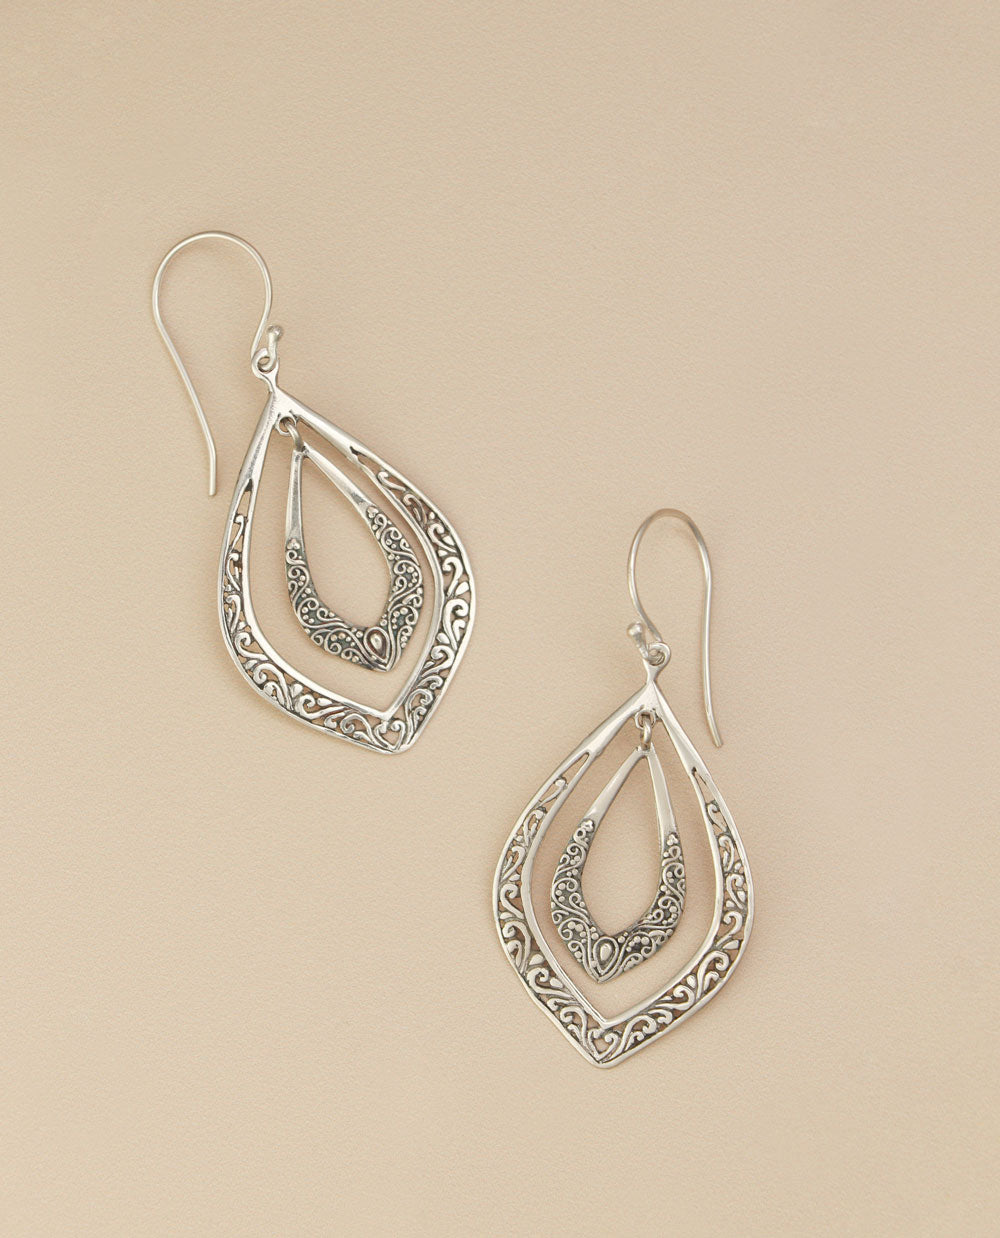 Double teardrop sterling silver earrings